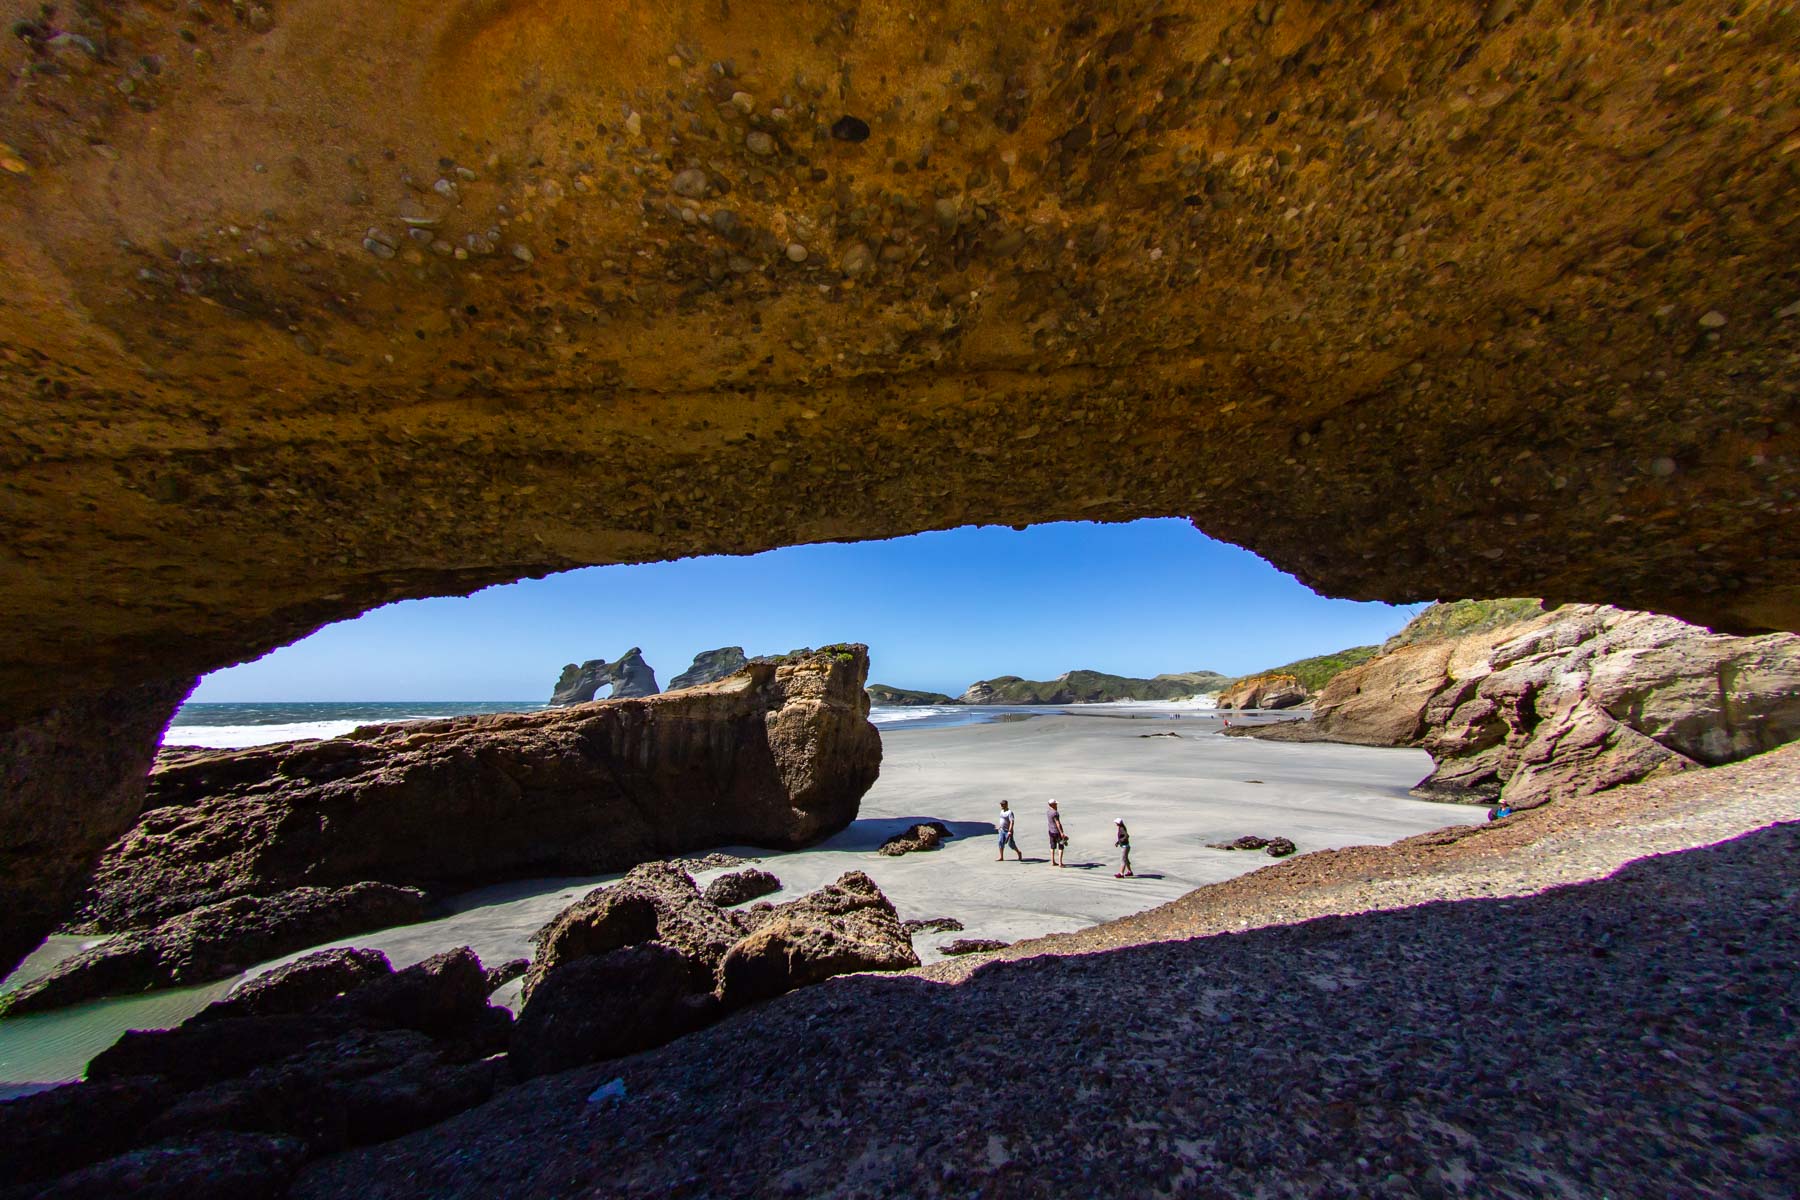 Une imposante arche rocheuse se dresse au premier plan tandis que plusieurs silhouettes arpentent une plage de sable parsemé d’îlots rocheux.